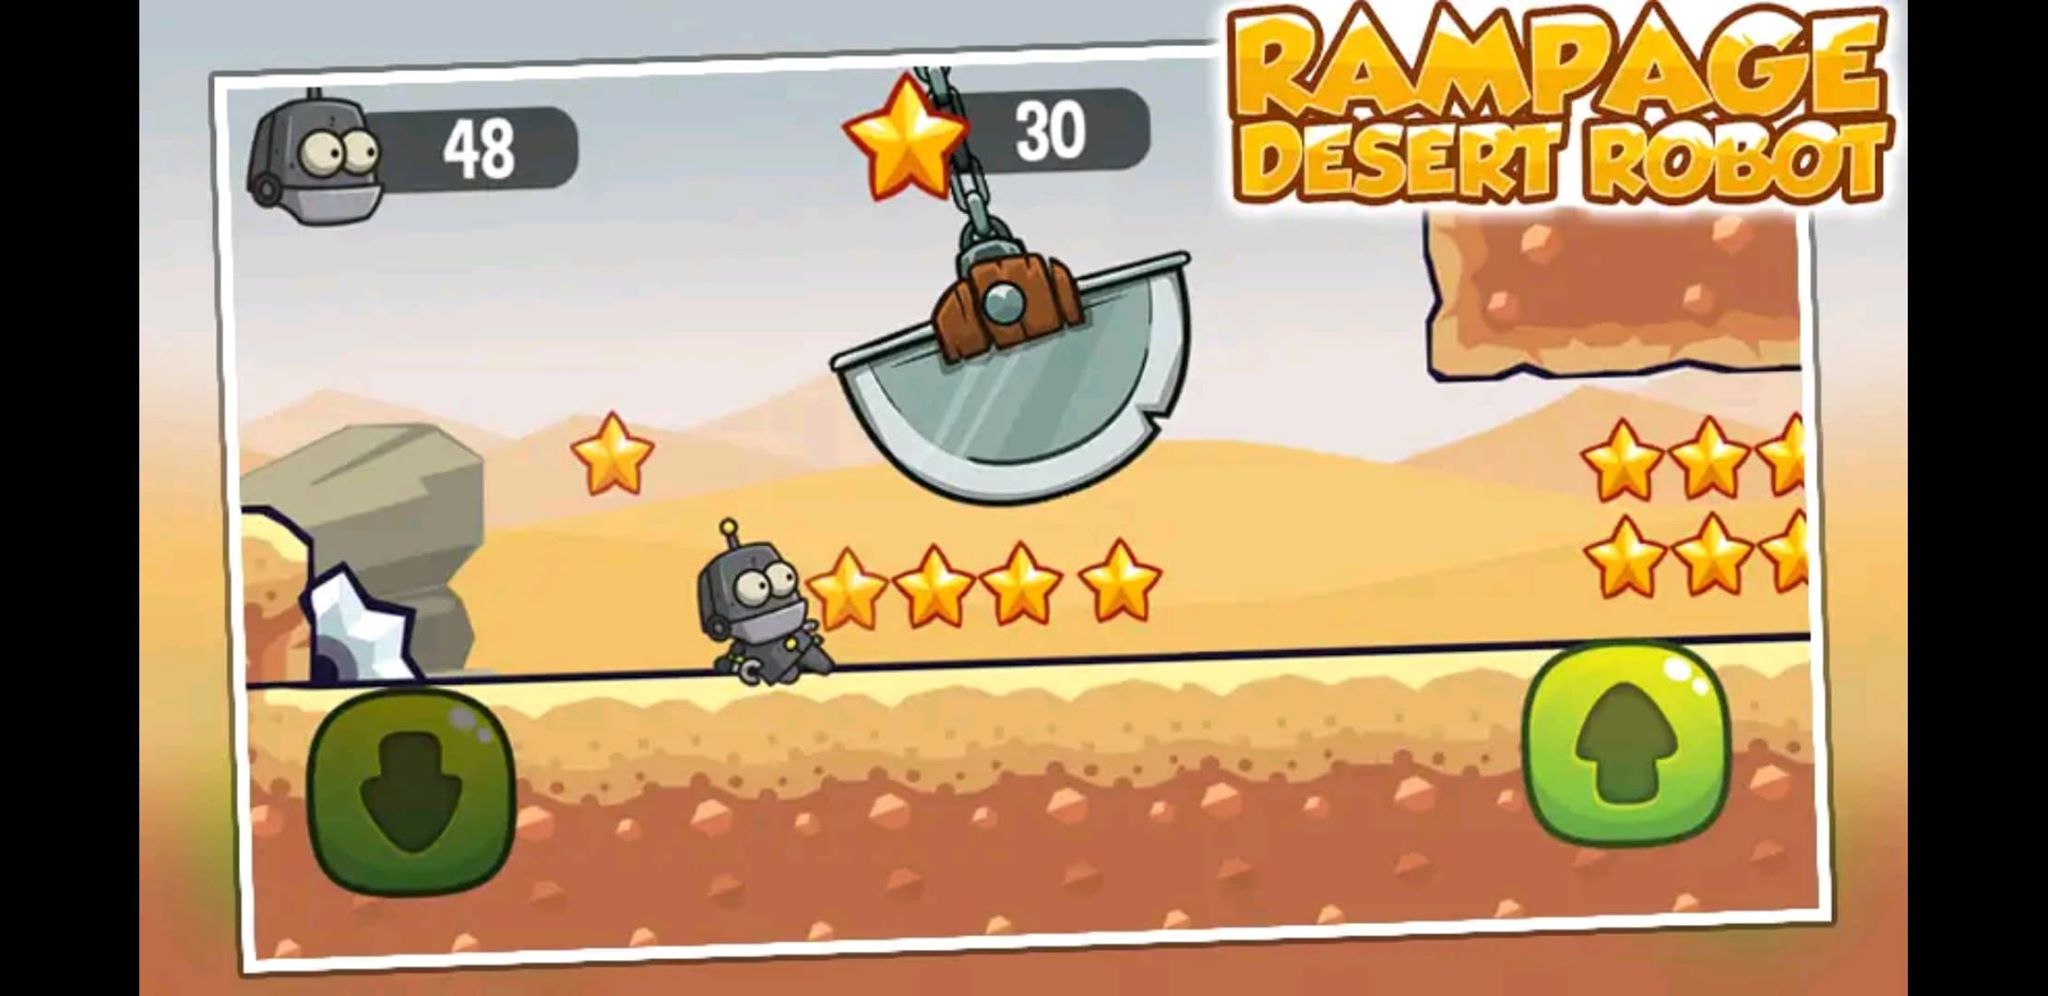 Rampage Desert Robot